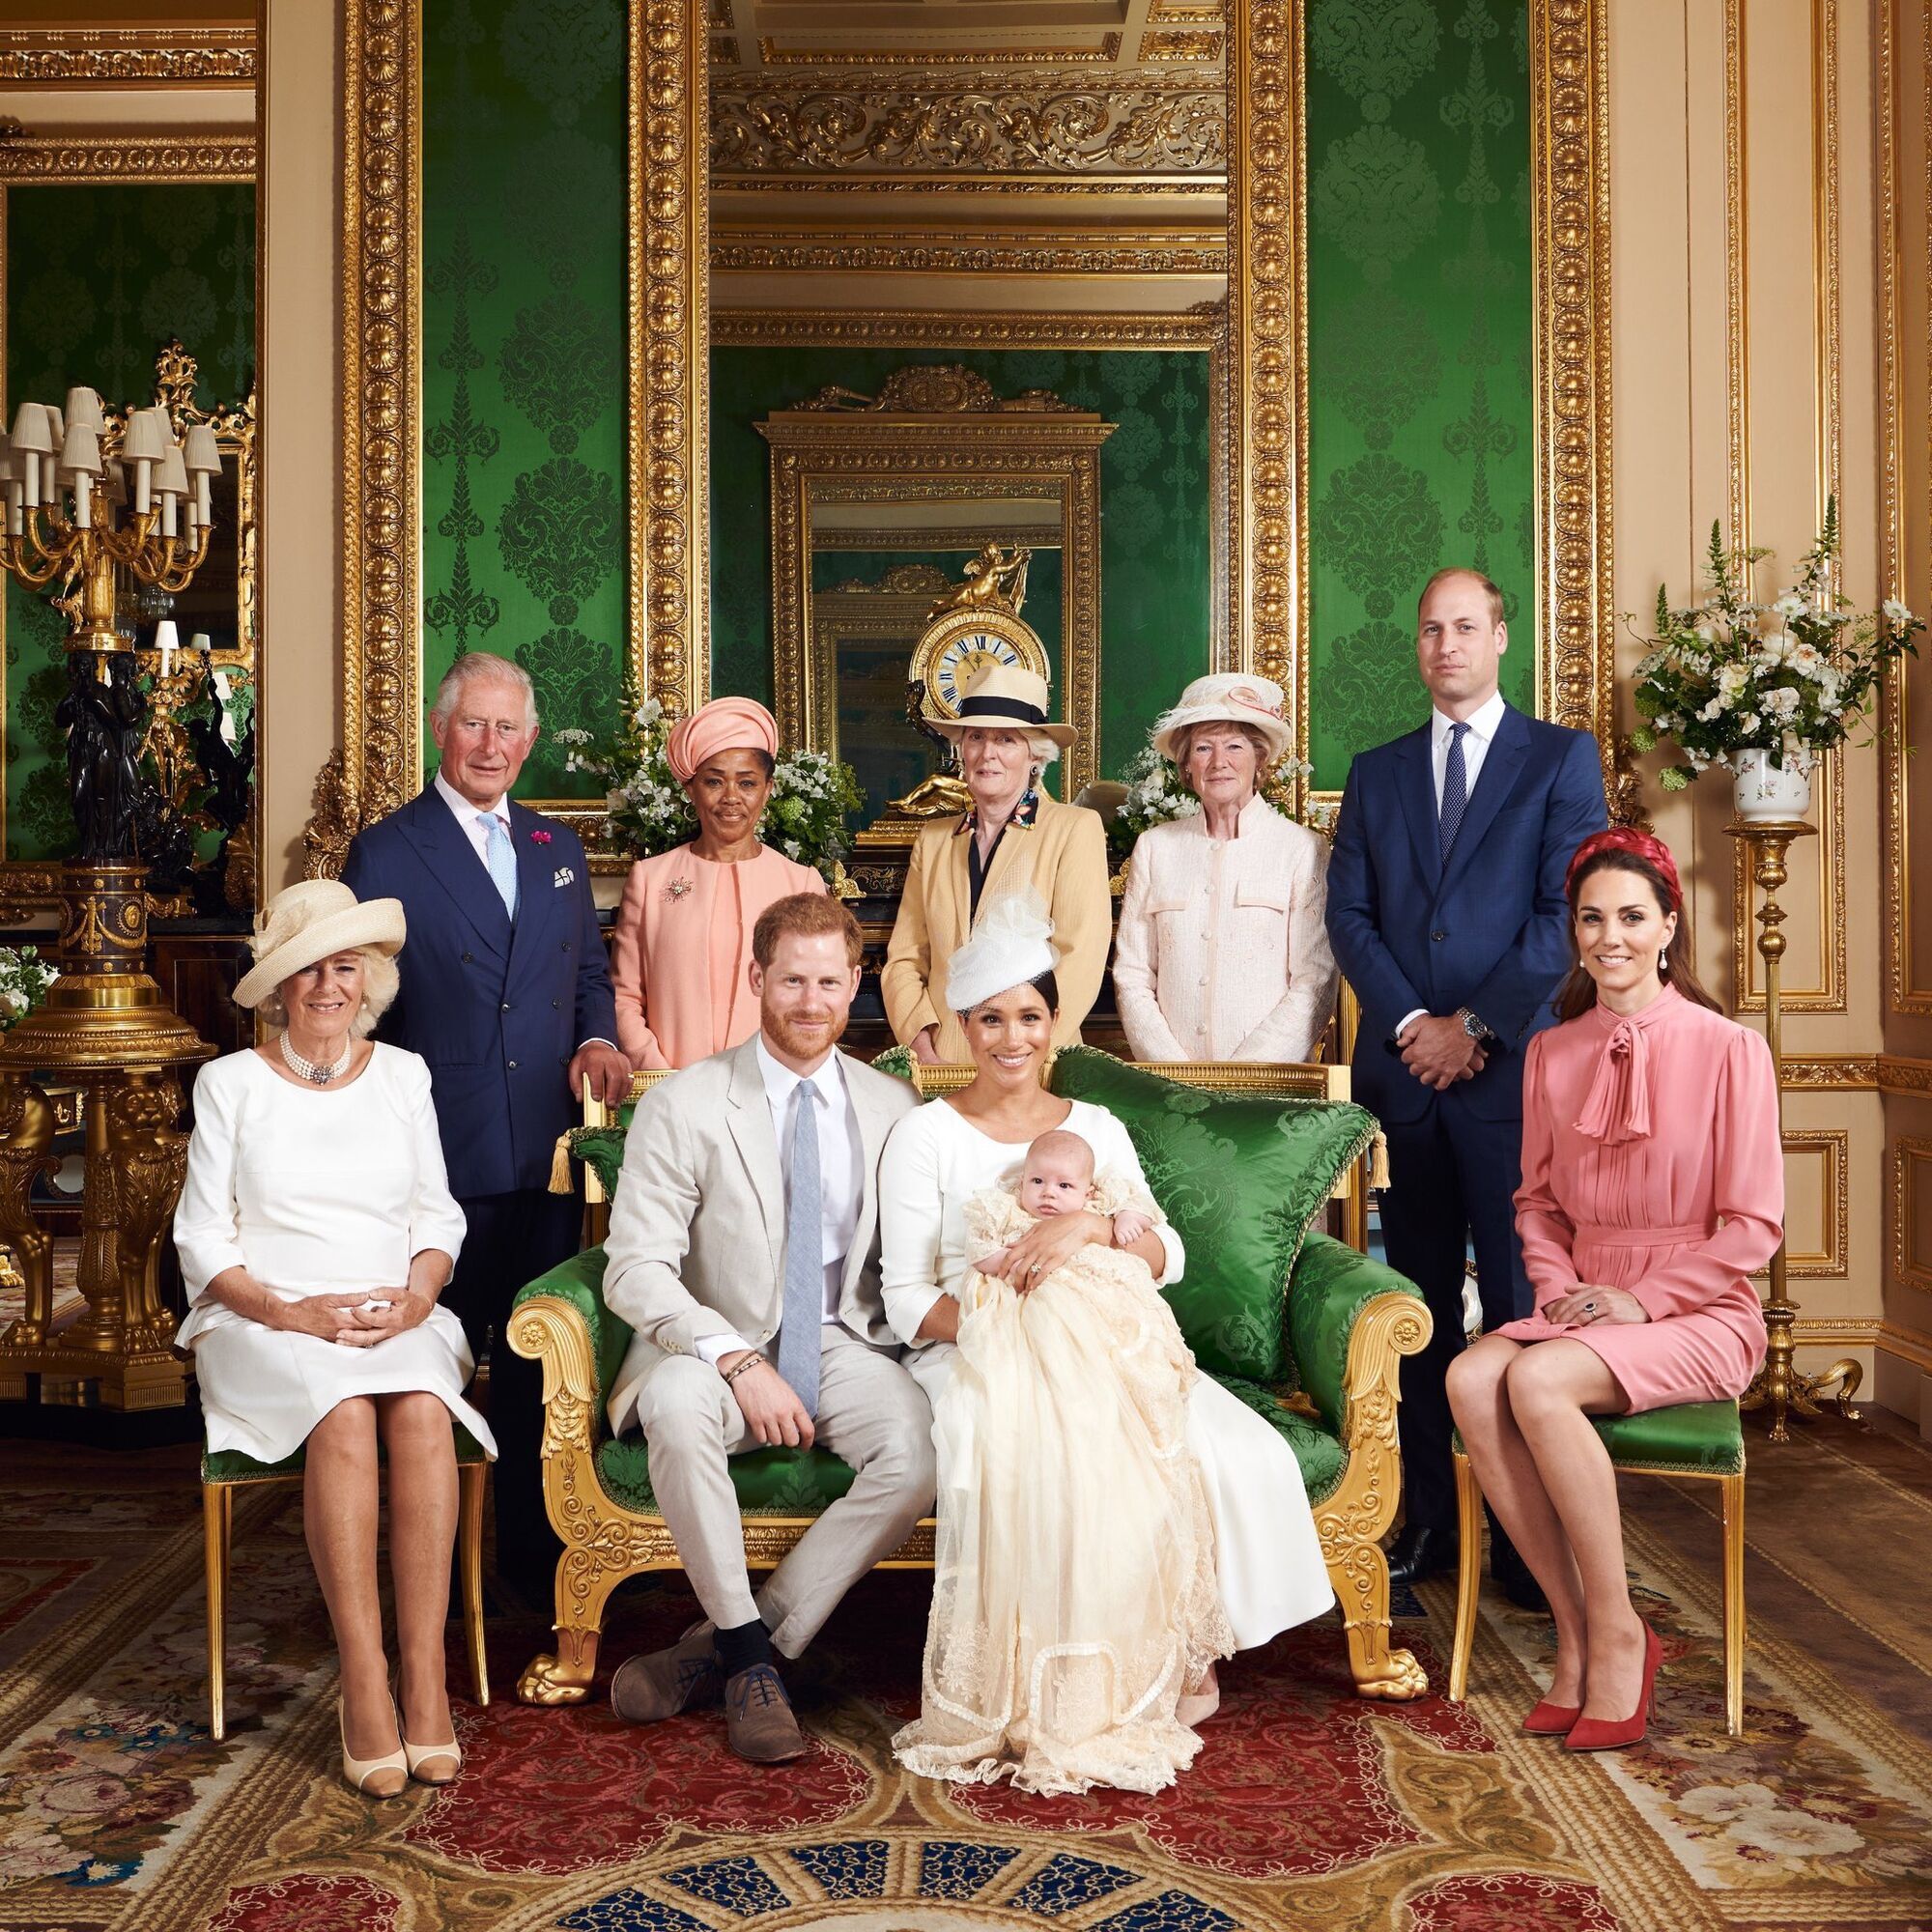 Meghan Markle i książę Harry również uwikłani w skandal photoshopowy: manipulacja zauważona na zdjęciu z chrztu Archiego